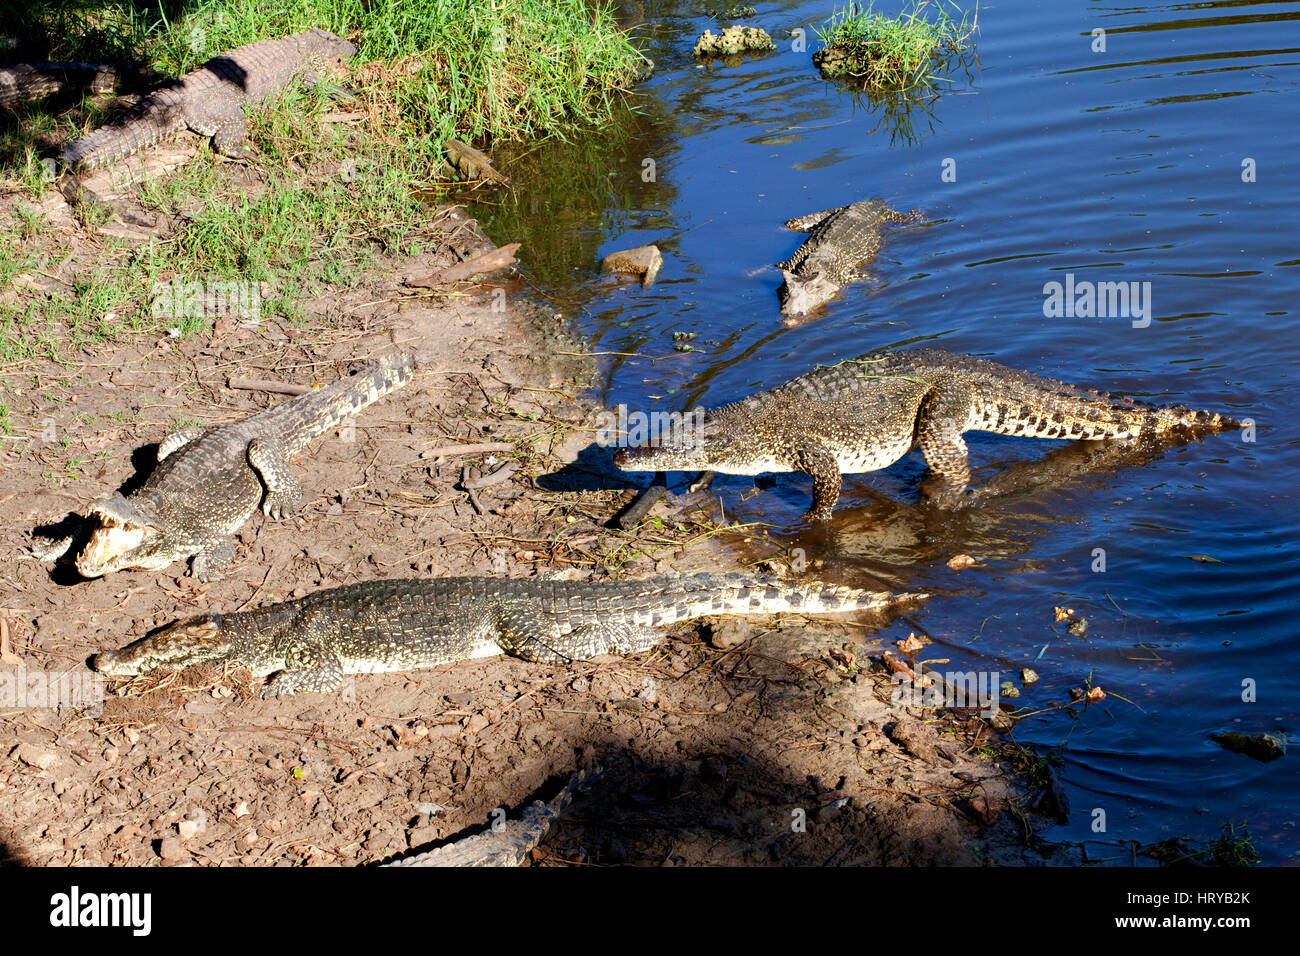 Les crocodiles de La Ferme Cuba Playa Larga, près de la Baie des Cochons, Matanzas, Cuba. Banque D'Images